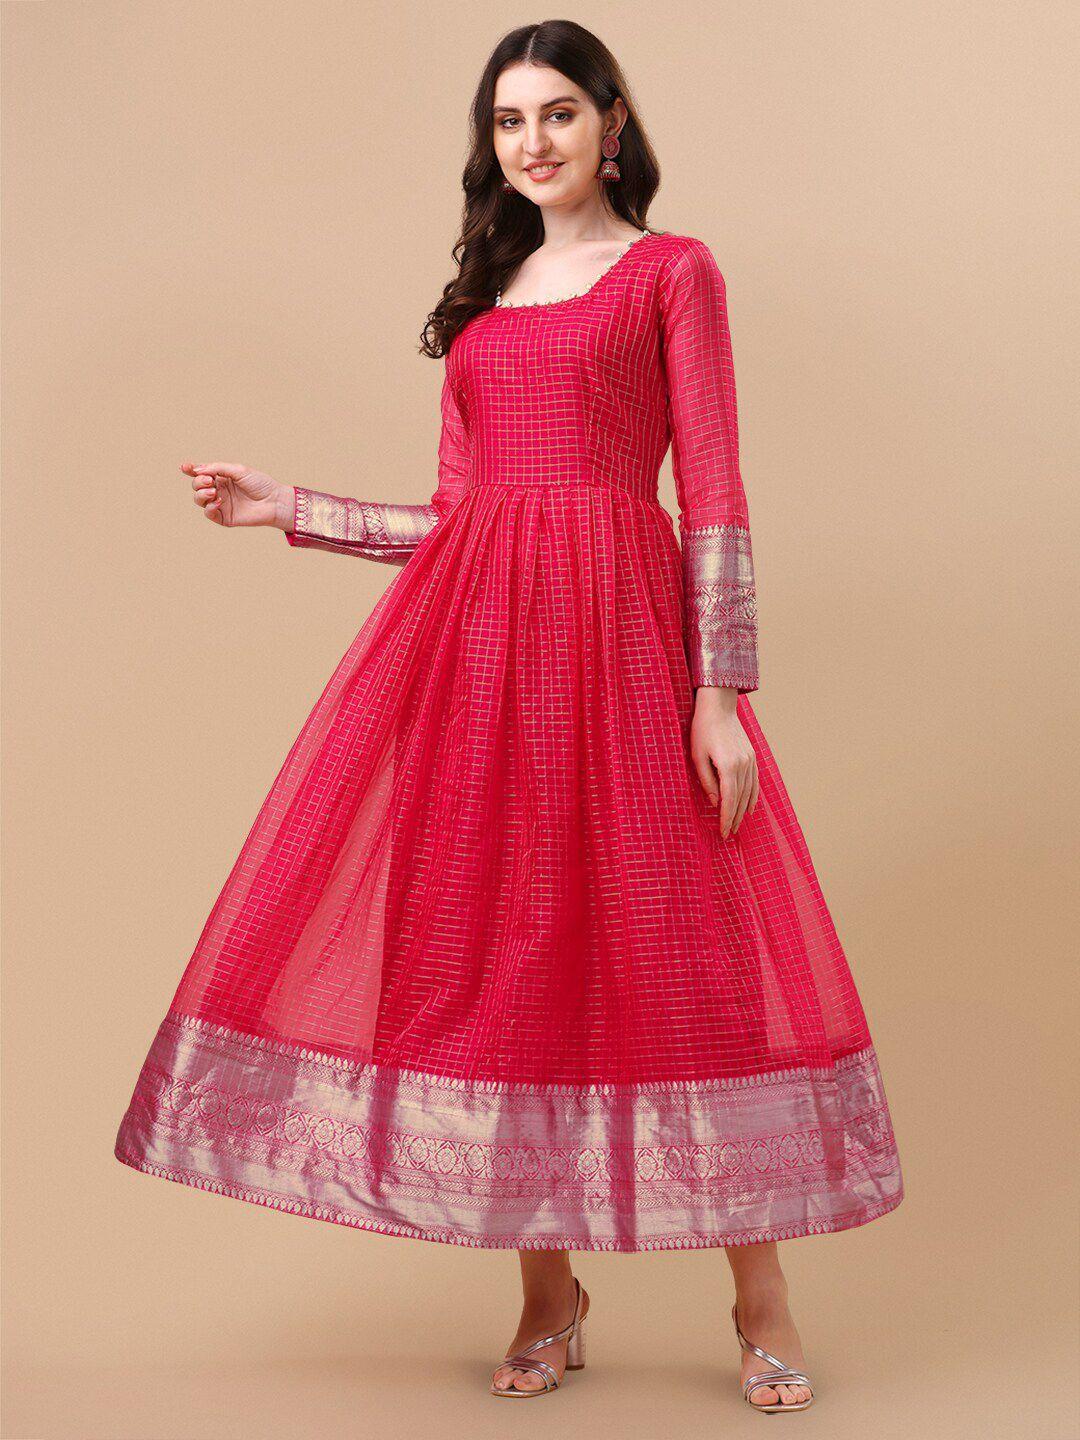 vidraa western store red ethnic motifs jacquard maxi dress